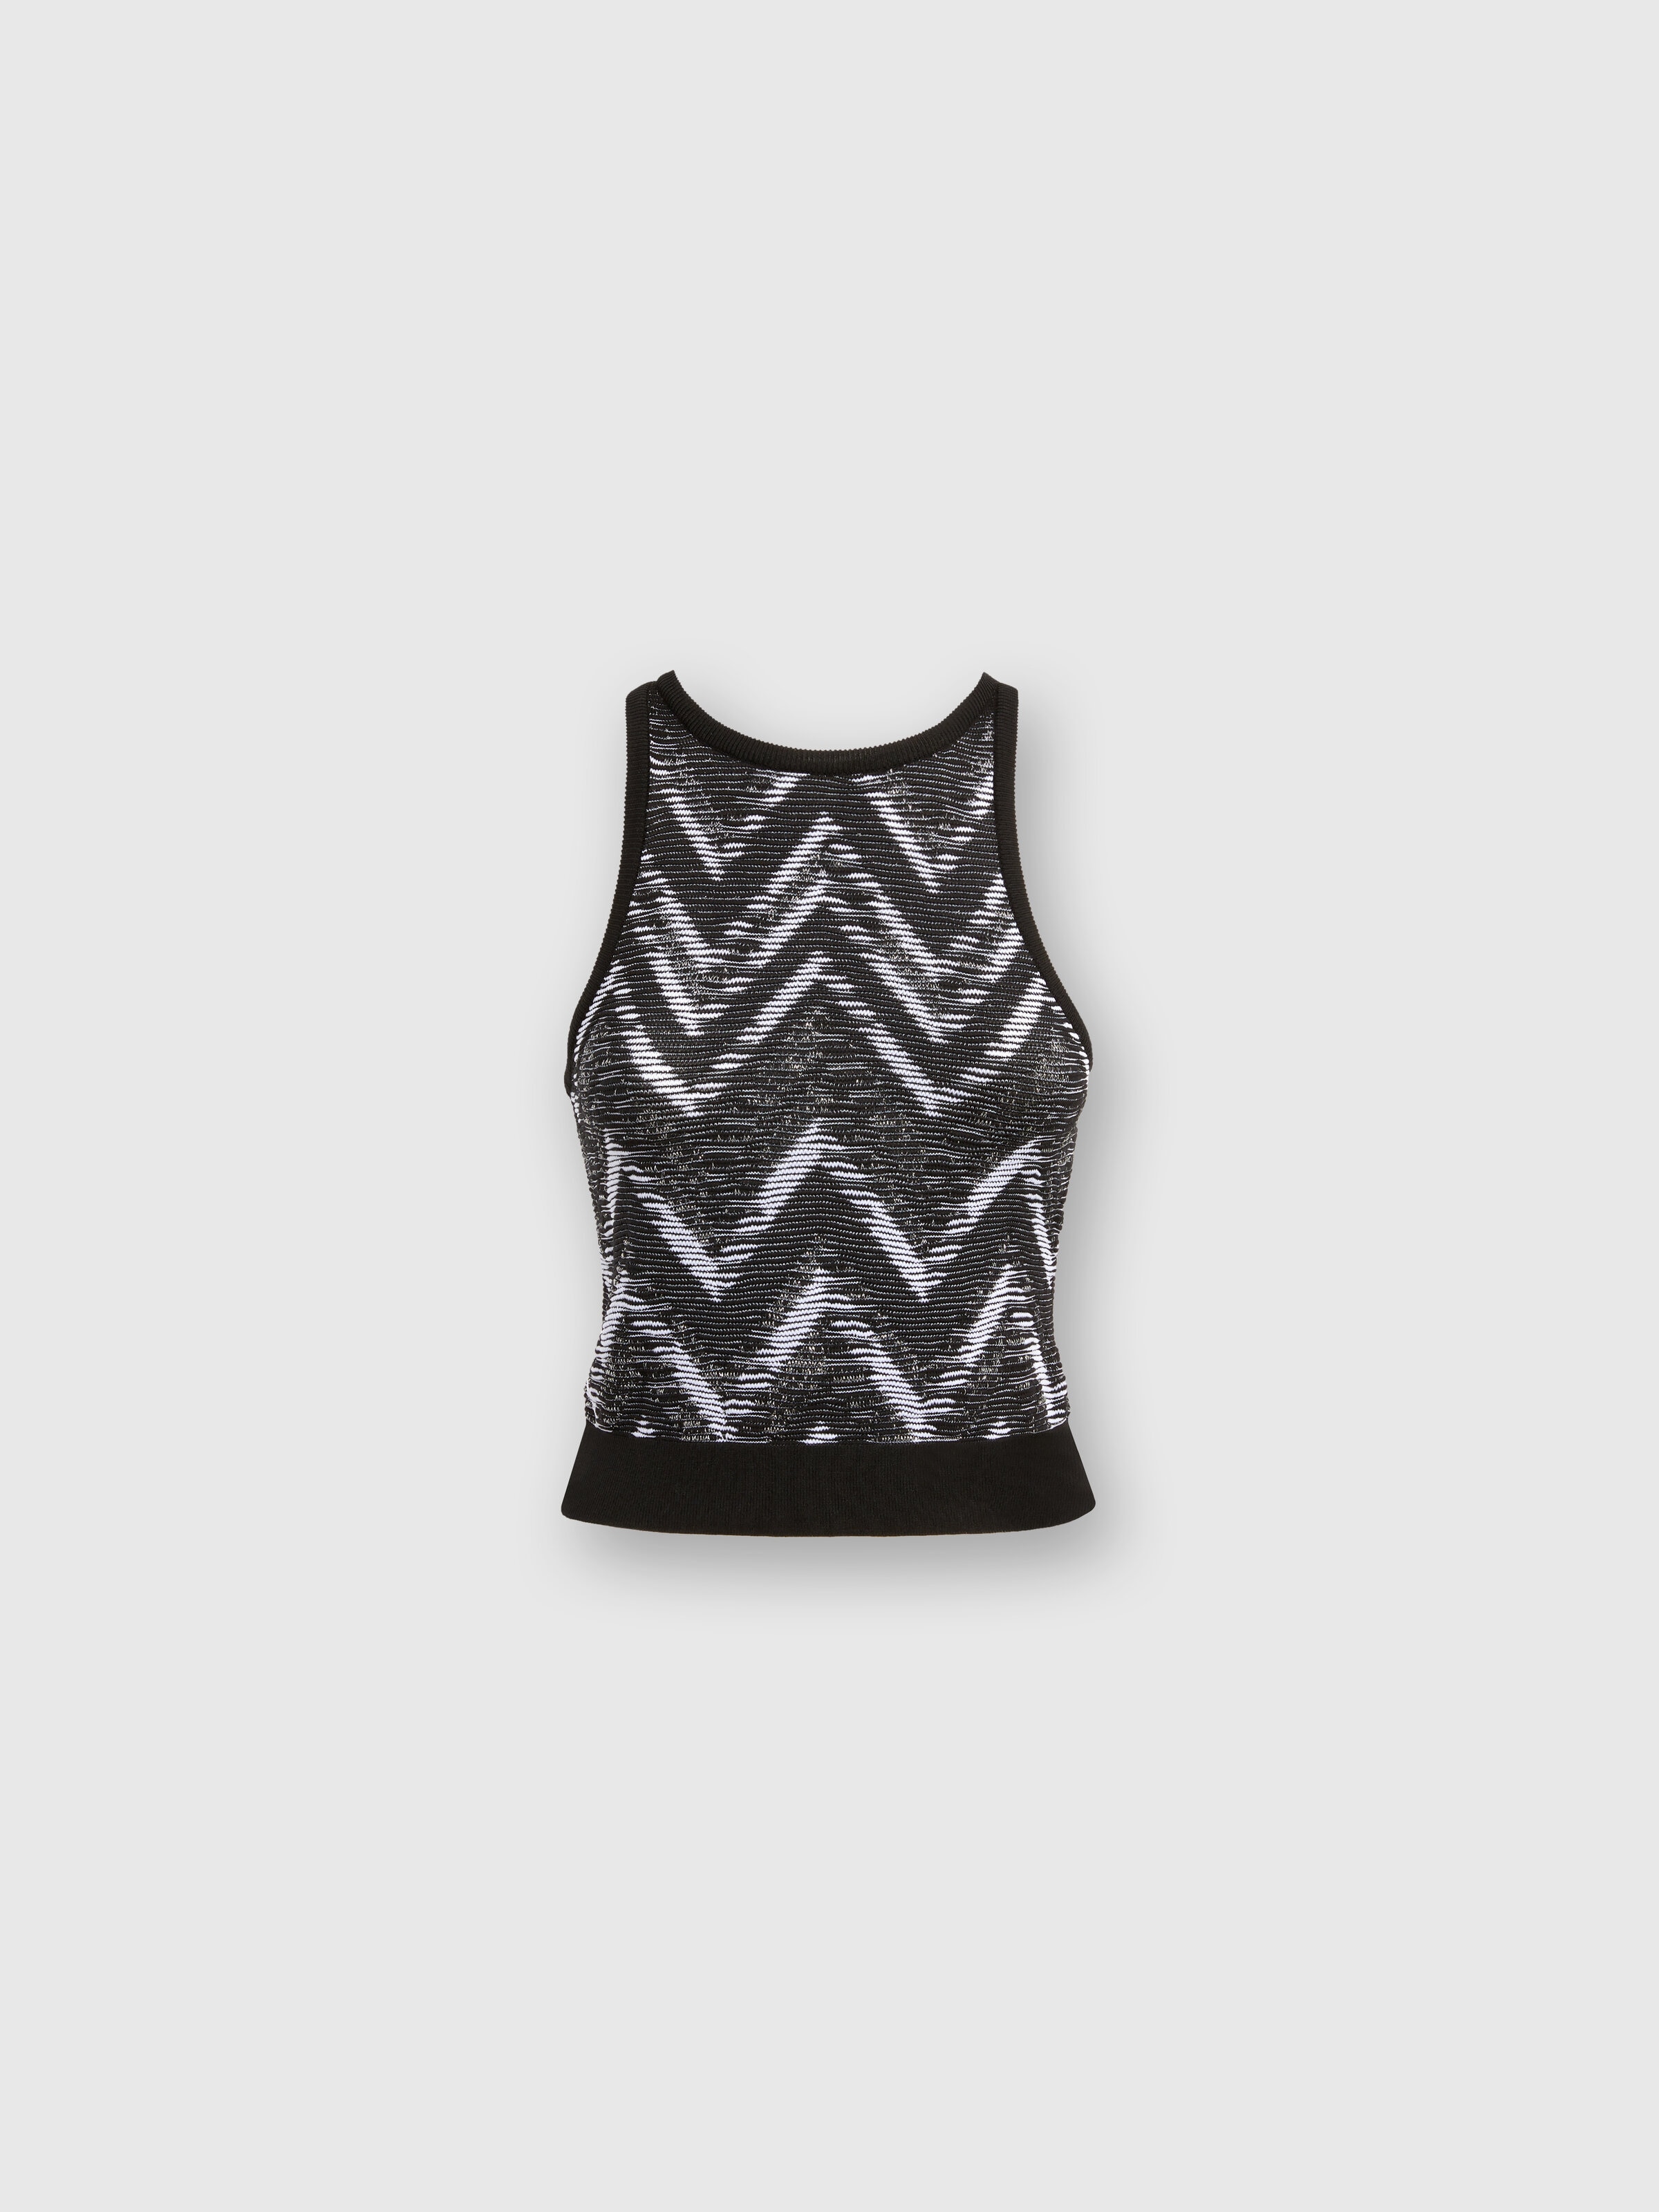 Chevron knit top with logo, Black & White - 0